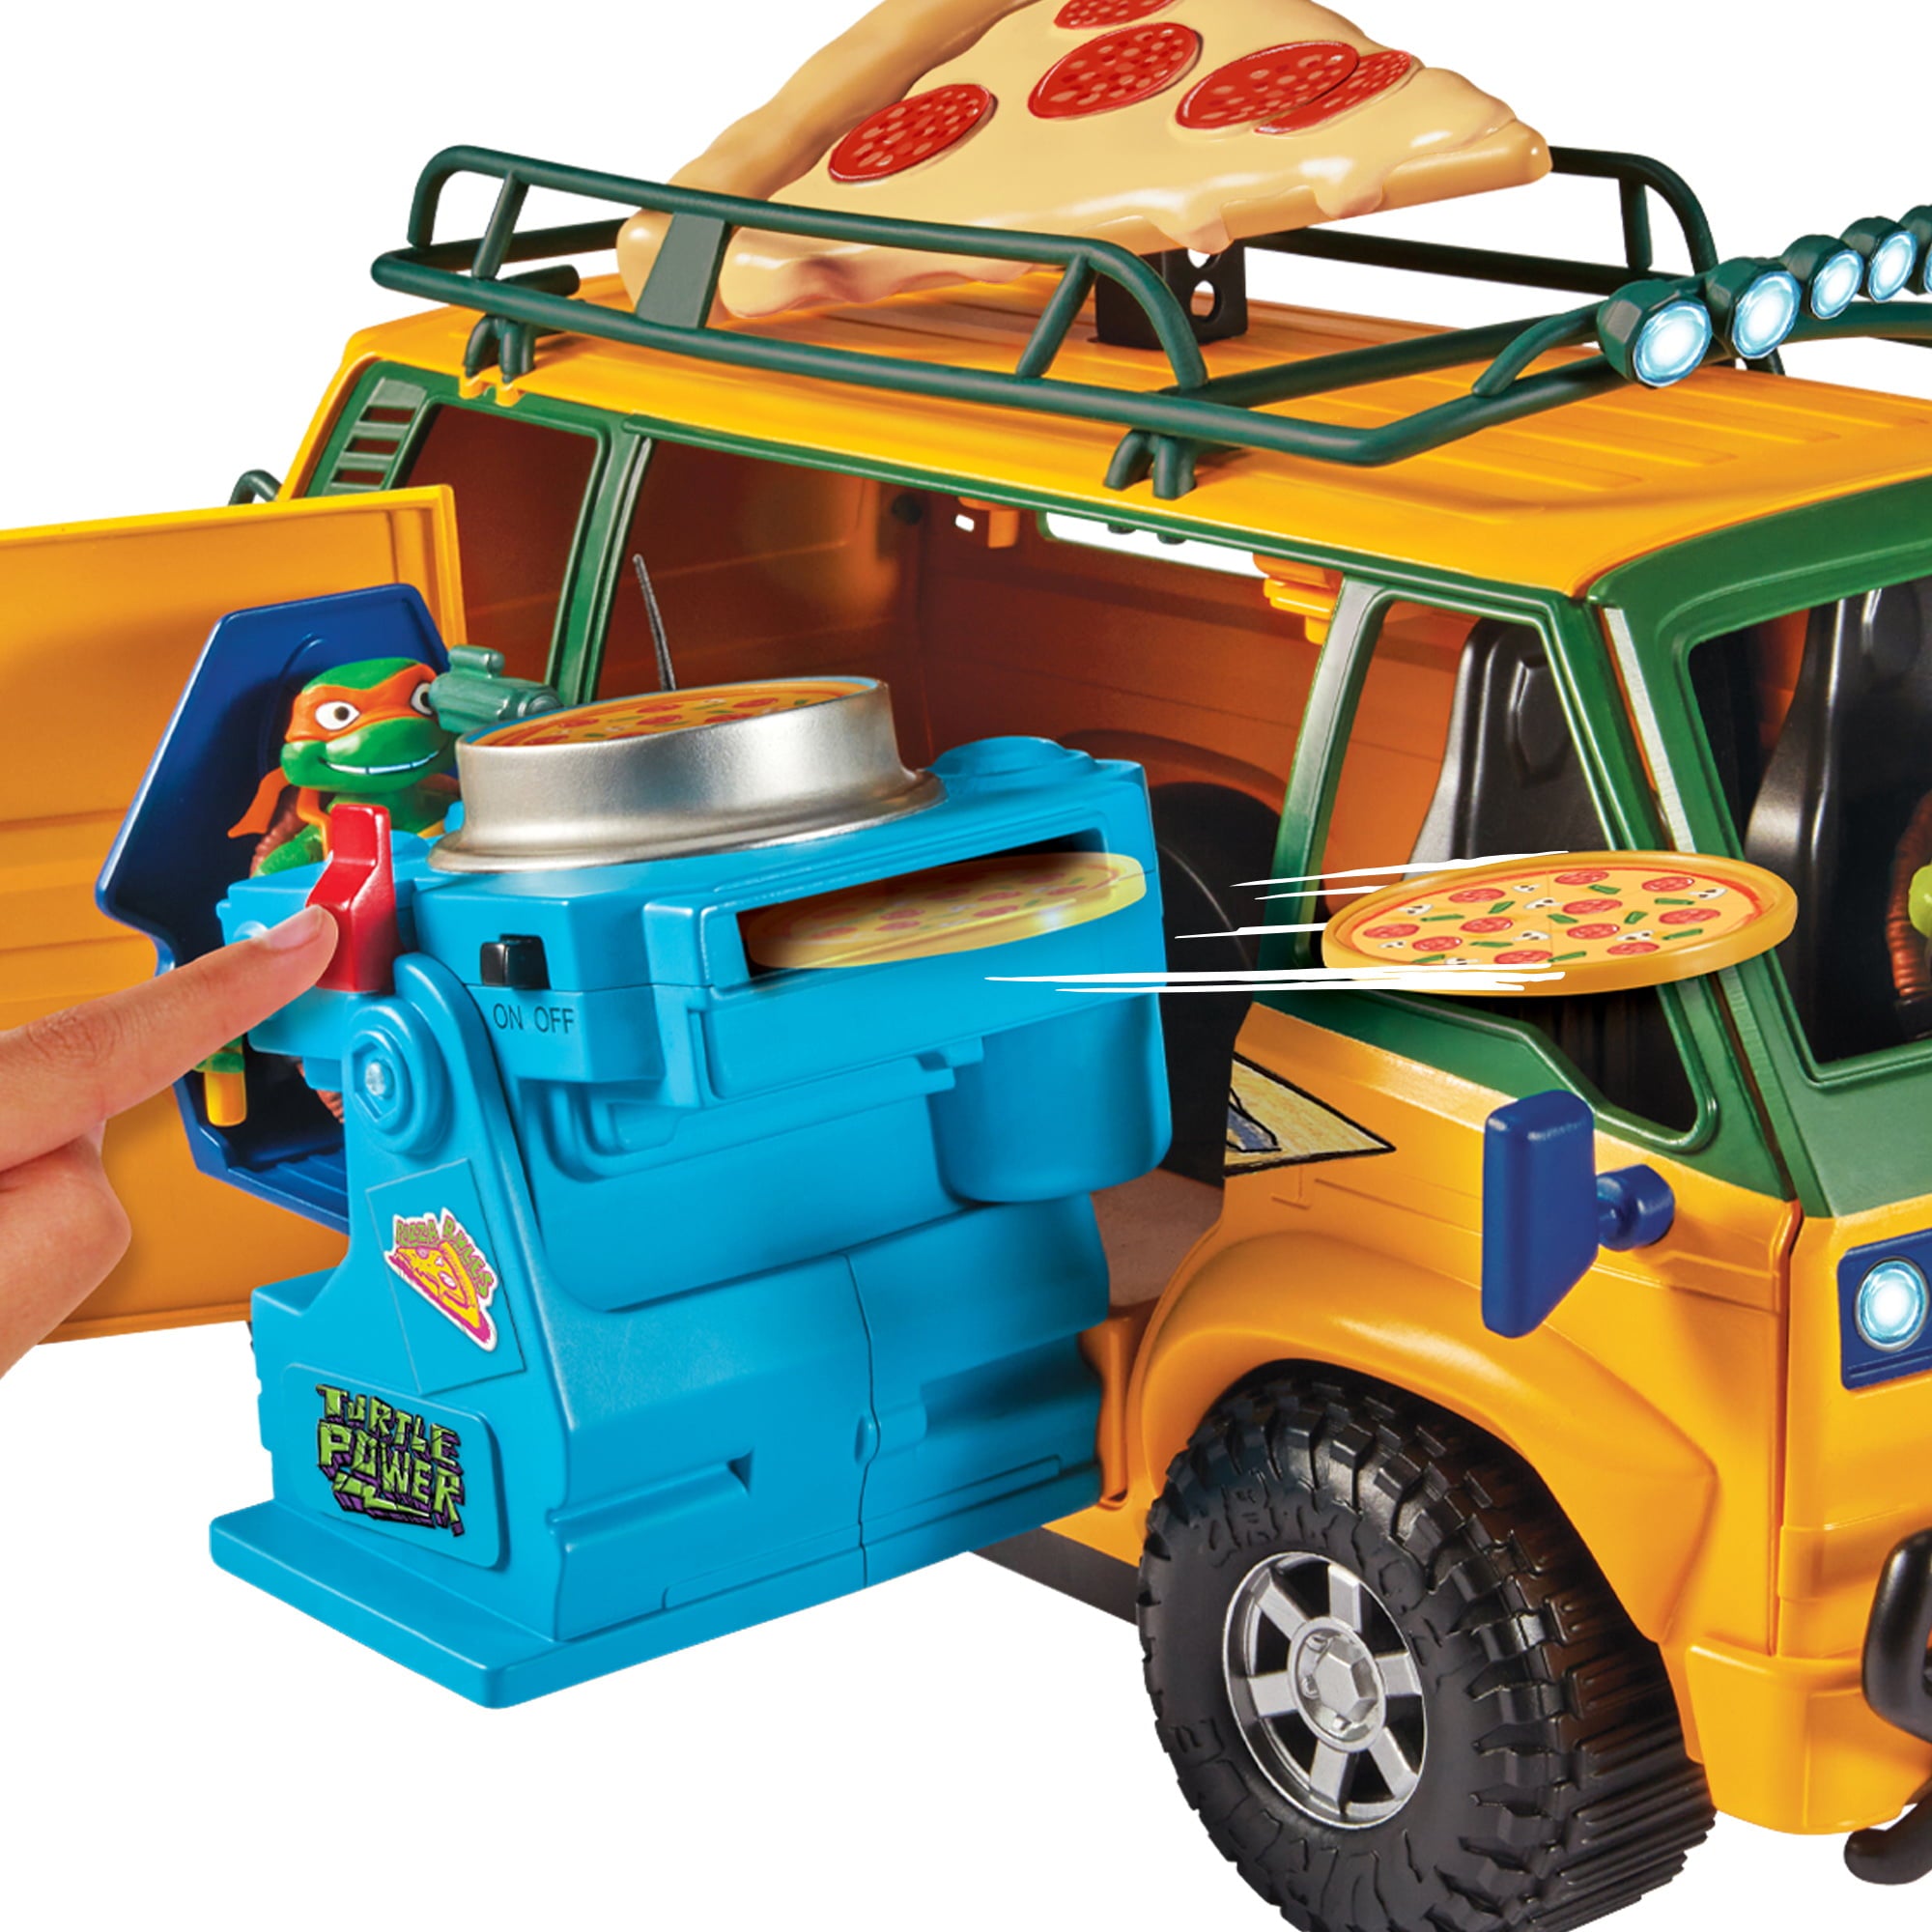 Playmates Toys - Teenage Mutant Ninja Turtles: Mutant Mayhem - Pizzafire Van - Marvelous Toys